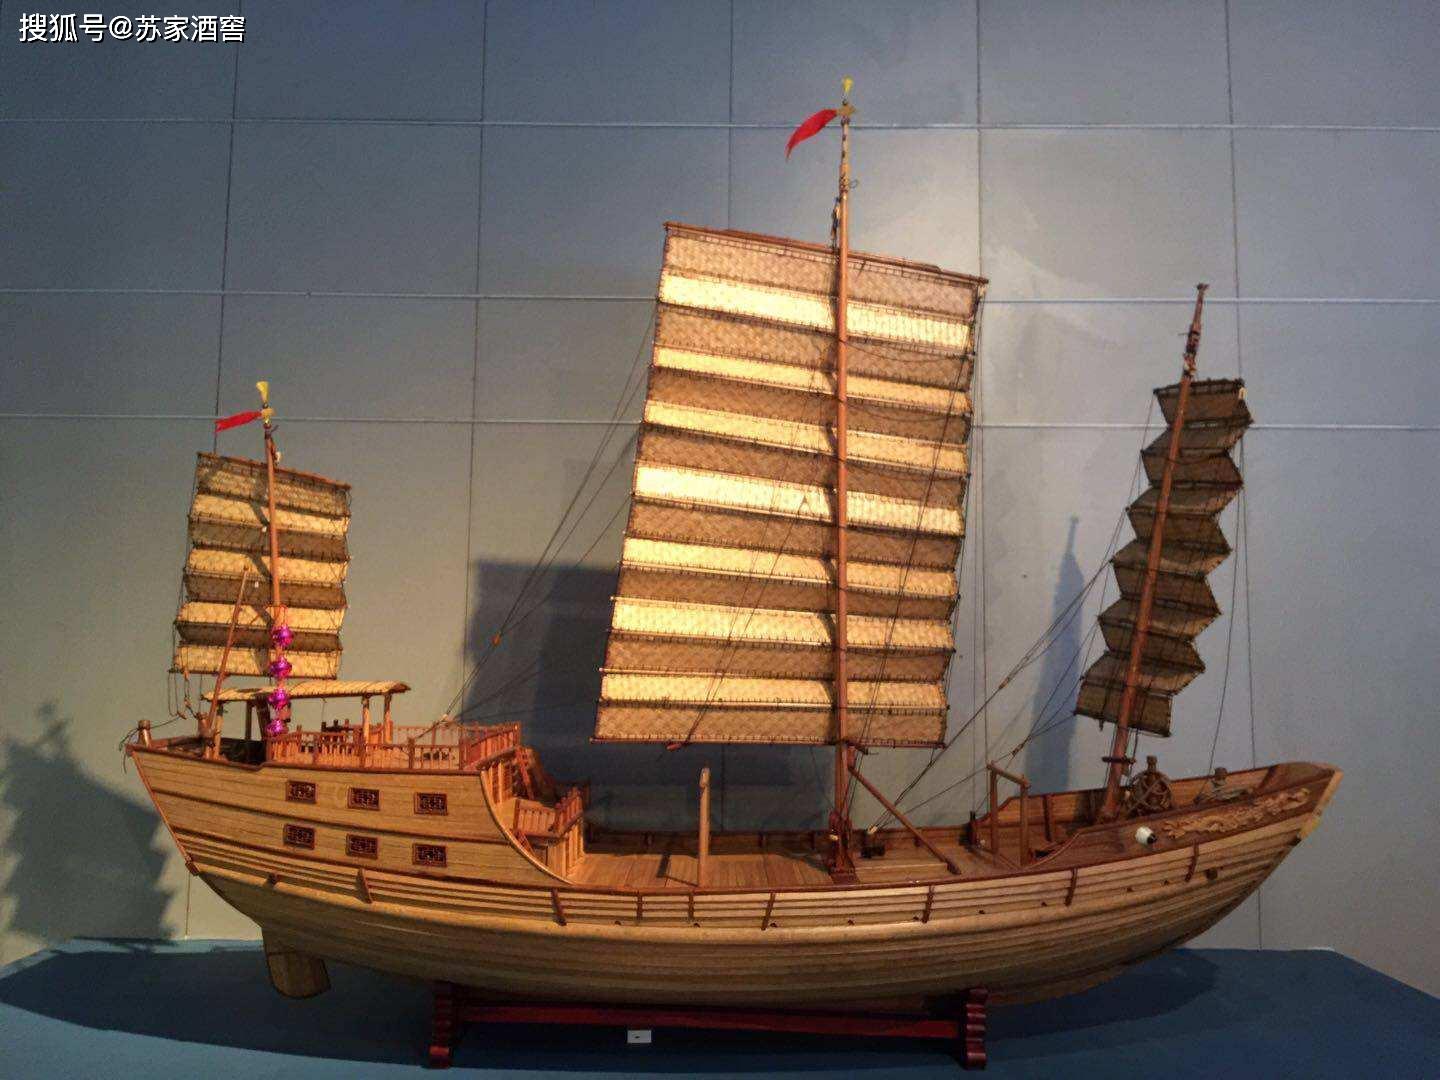 古代战船两宋时期的海上交通到此为止全部分享完毕,既然前文已经提到